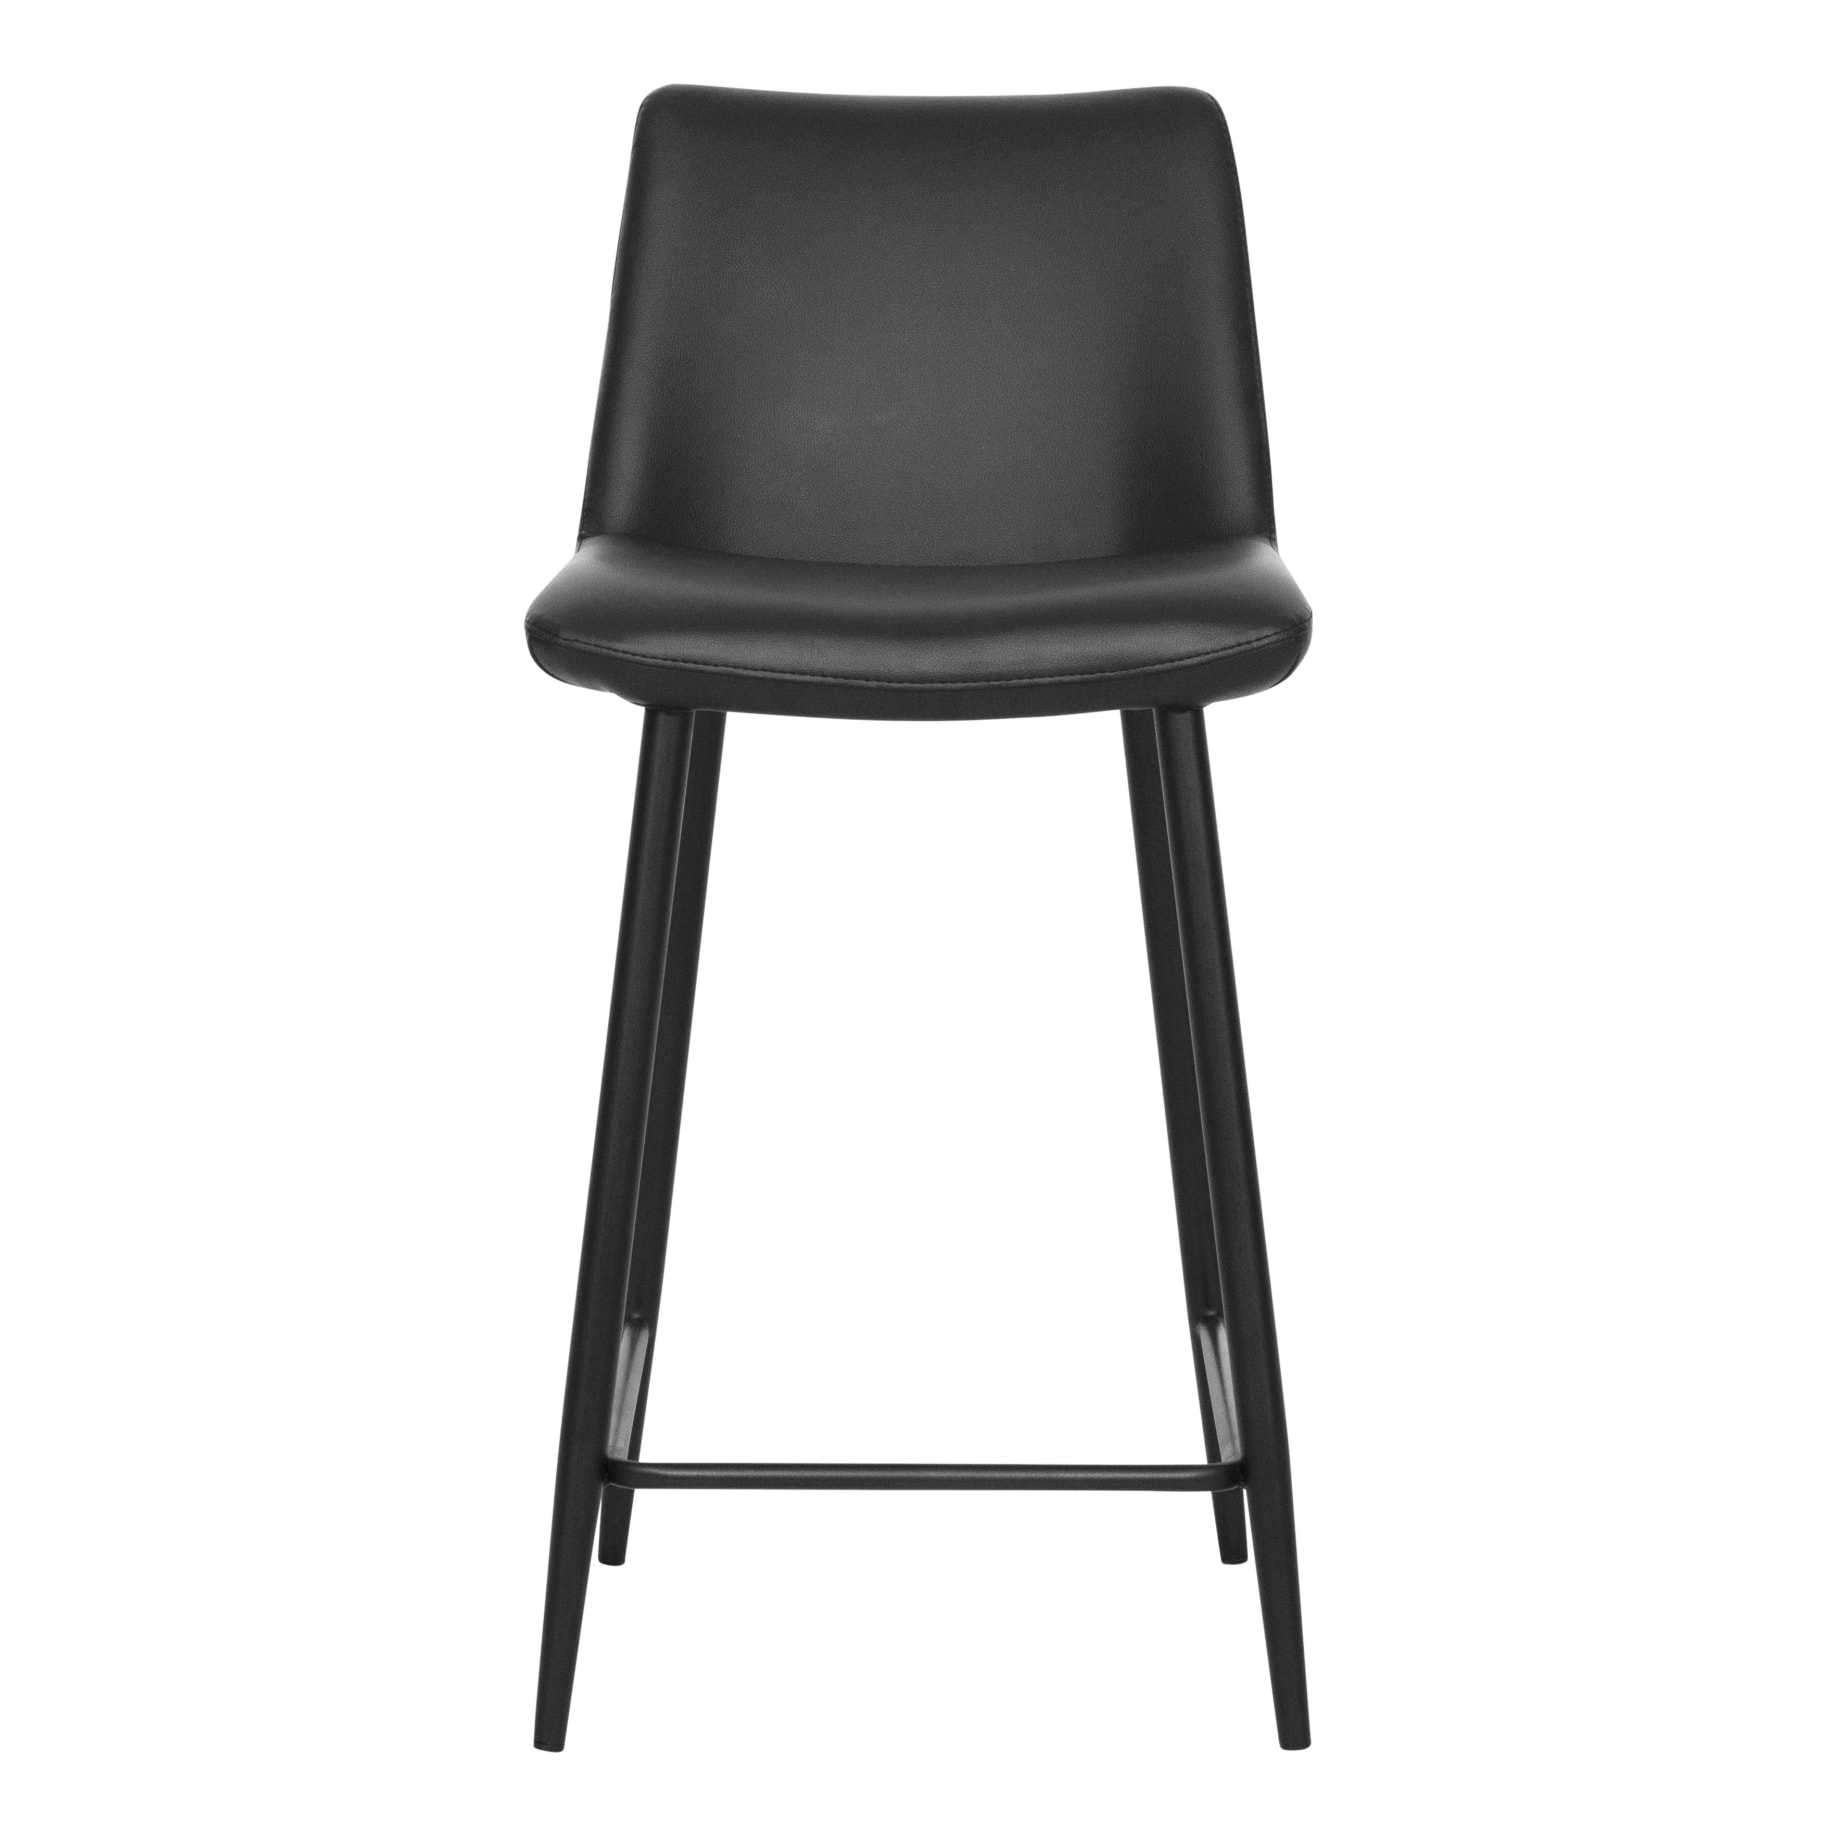 Cannes Bar Chair in Black PU / Black Leg